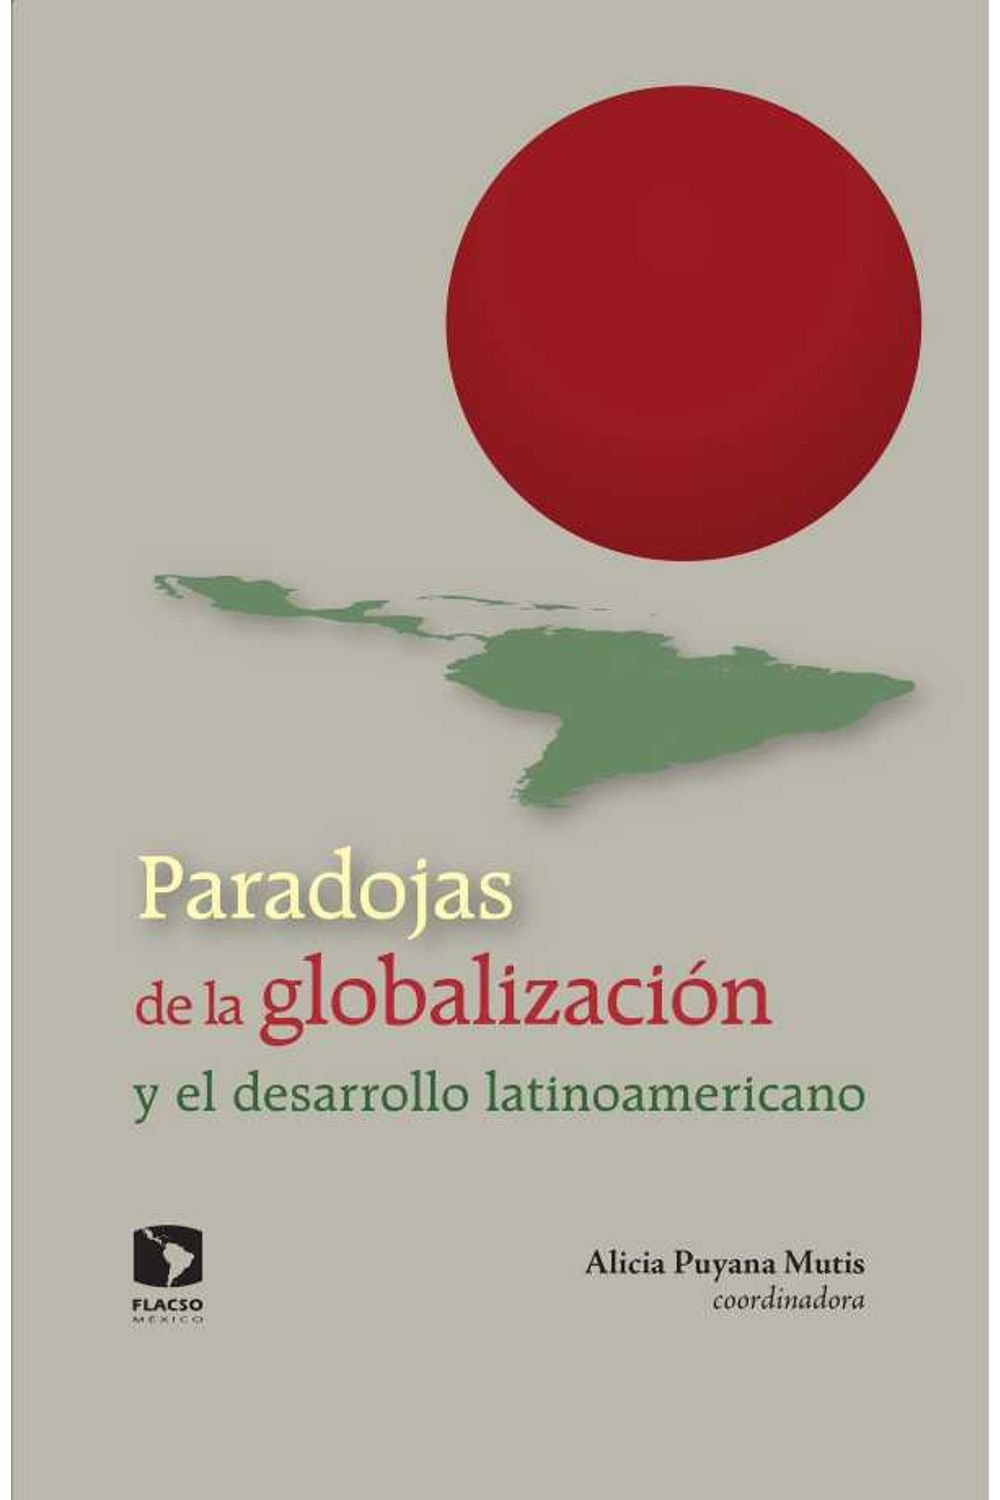 bw-paradojas-de-la-globalizacioacuten-y-el-desarrollo-latinoamericano-facultad-latinoamericana-de-ciencias-9786079275839